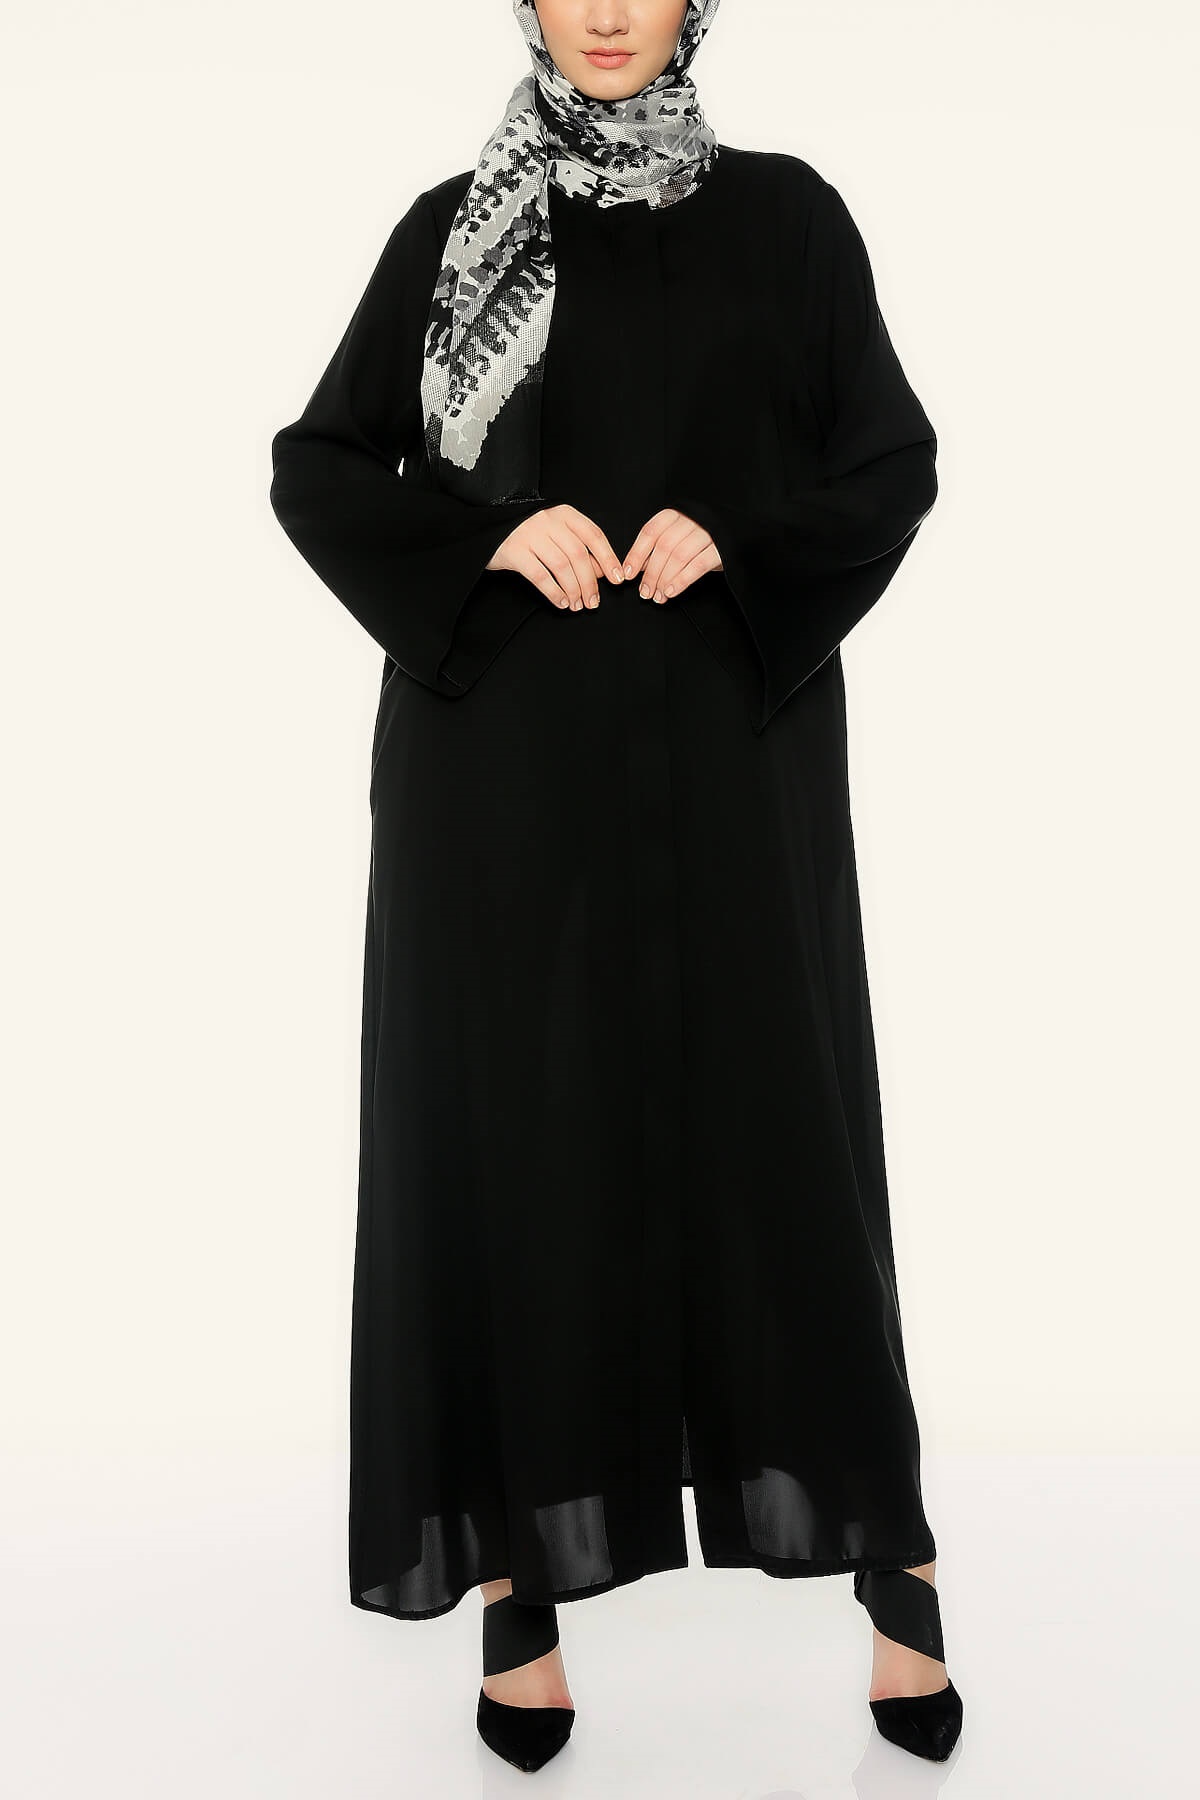 Yarasa Kol Kap - Siyah - Mihand - Hijab Elifcem.com